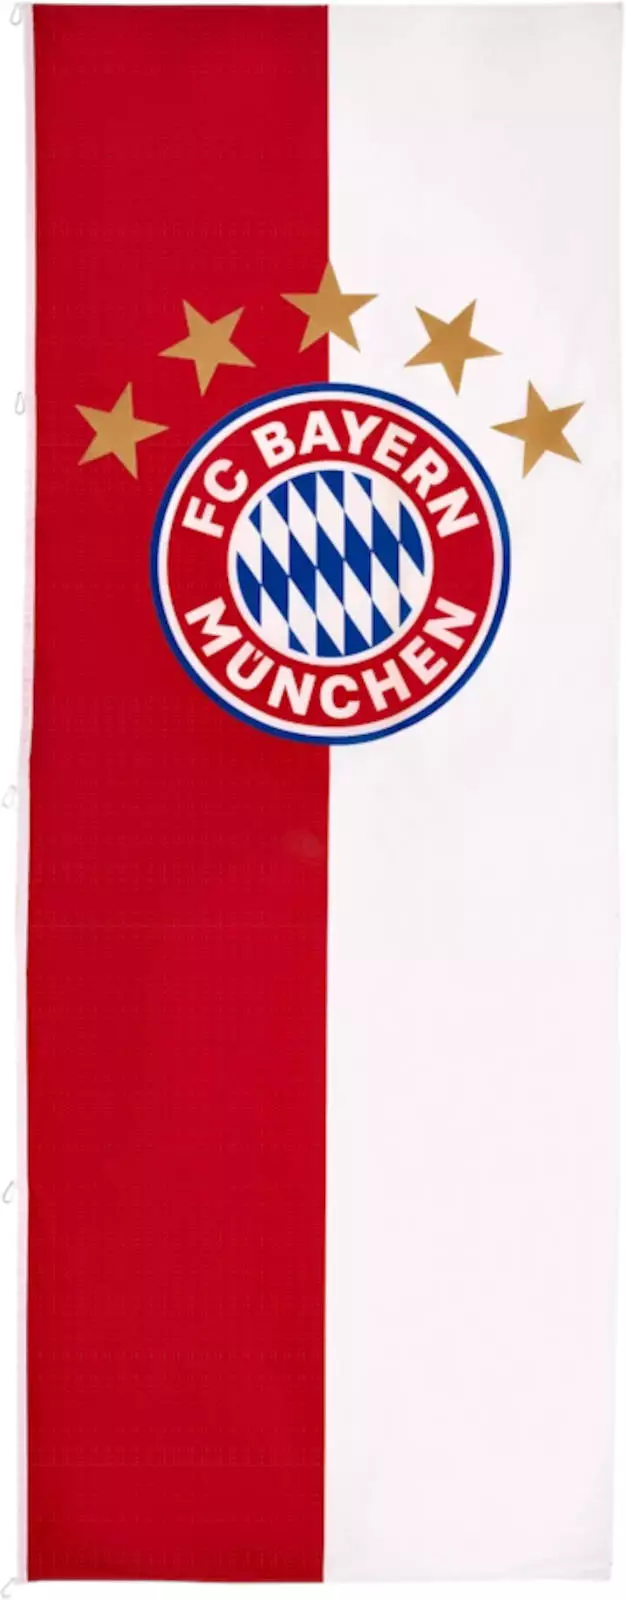 Die Hissflagge des FC Bayern München mit dem 5-Sterne-Logo im Hochformat, ein stolzes Symbol für die Erfolge des Vereins, perfekt für Bayern-Fans.